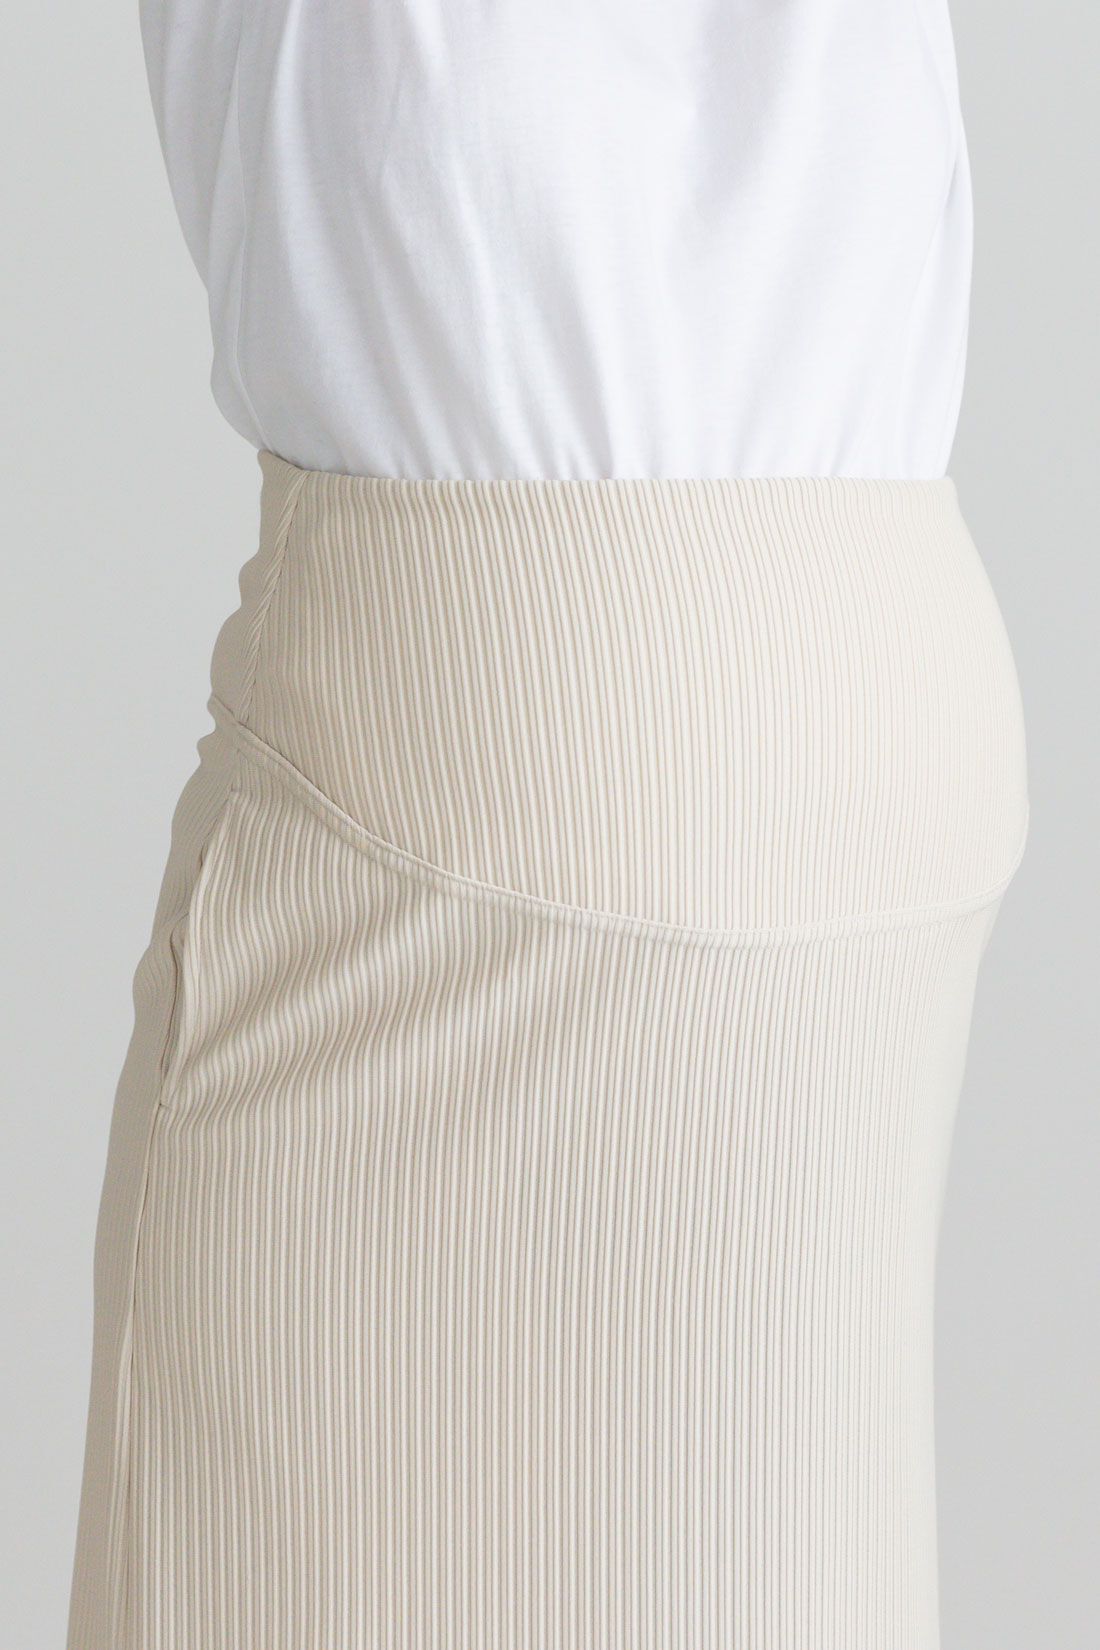 フェリシモMama|Moredde　リップルカットソー素材がらくちんきれいな　産前産後使えるIラインスカート〈アイボリー〉|おなか周りの切り替え部分もスカートと同素材。見えてもきれいで高見えします。